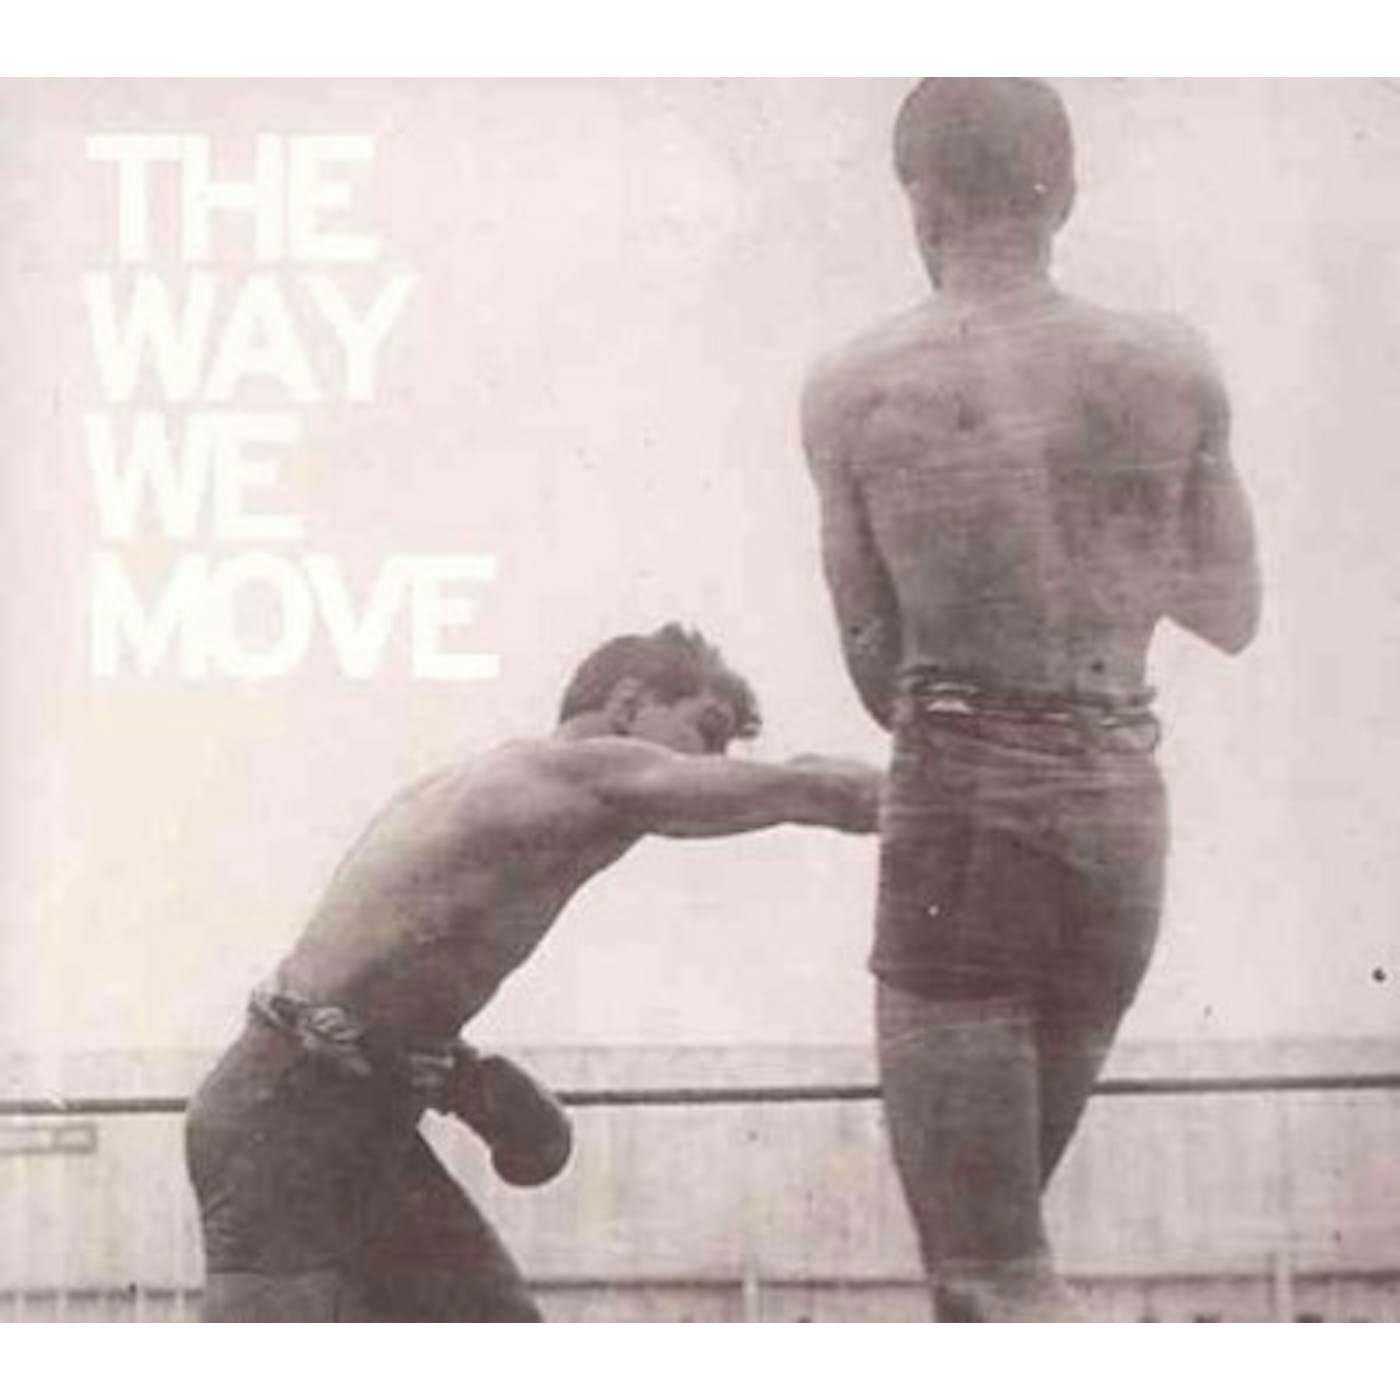 Langhorne Slim Way We Move CD